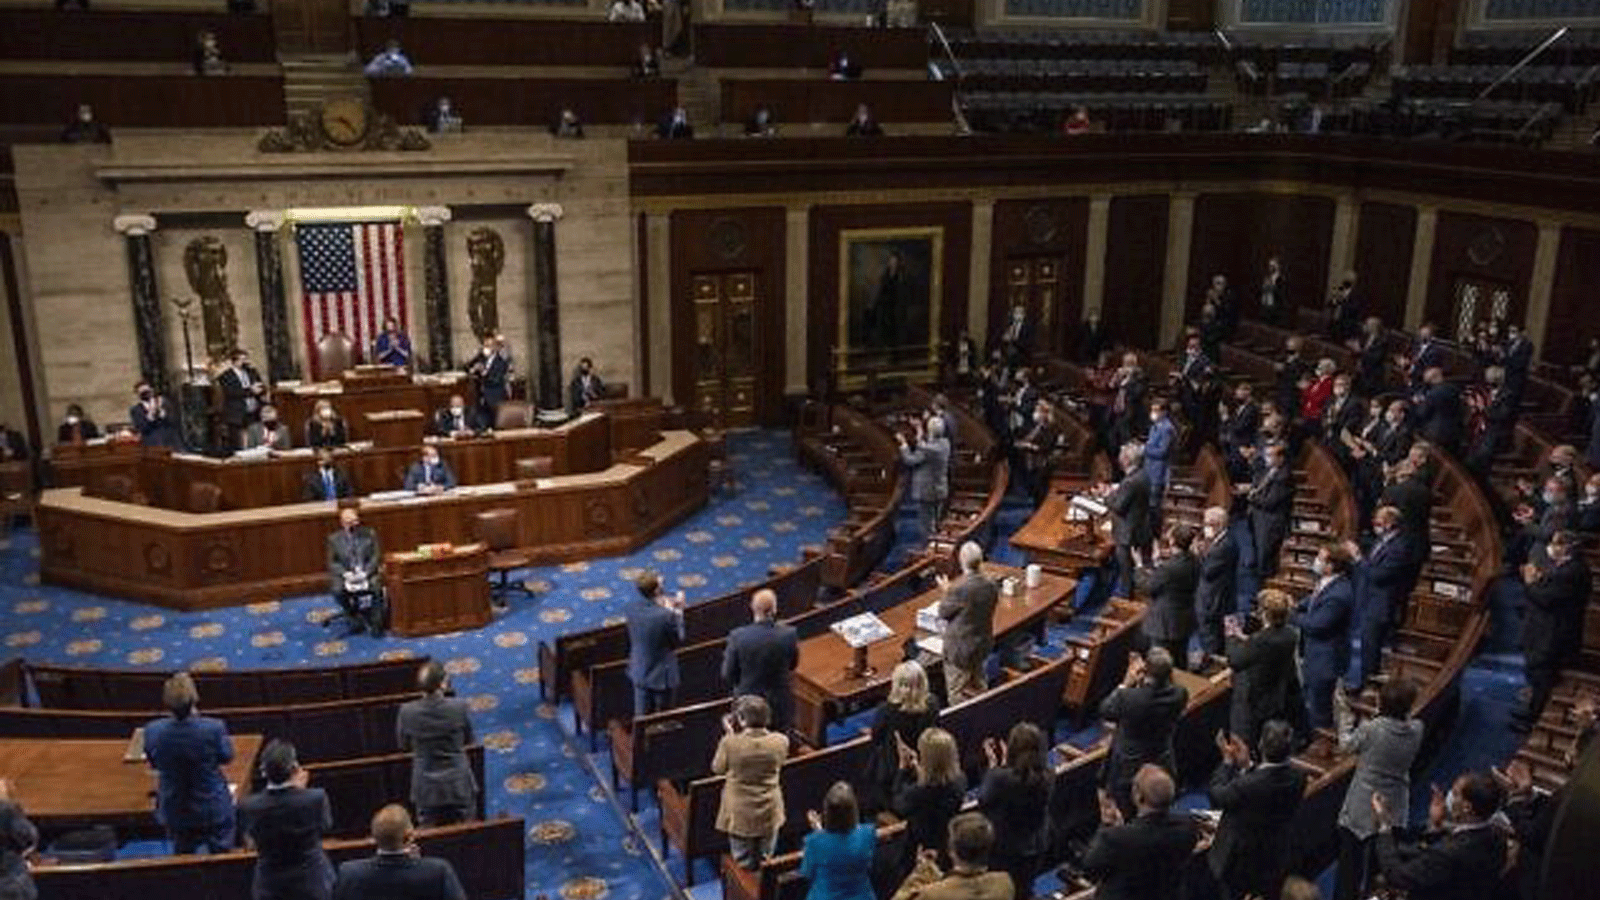  رئيسة مجلس النواب الأمريكي نانسي بيلوسي تترأس جلسة مشتركة مستأنفة للكونغرس في غرفة مجلس النواب في 6 كانون الثاني/يناير 2021 في واشنطن